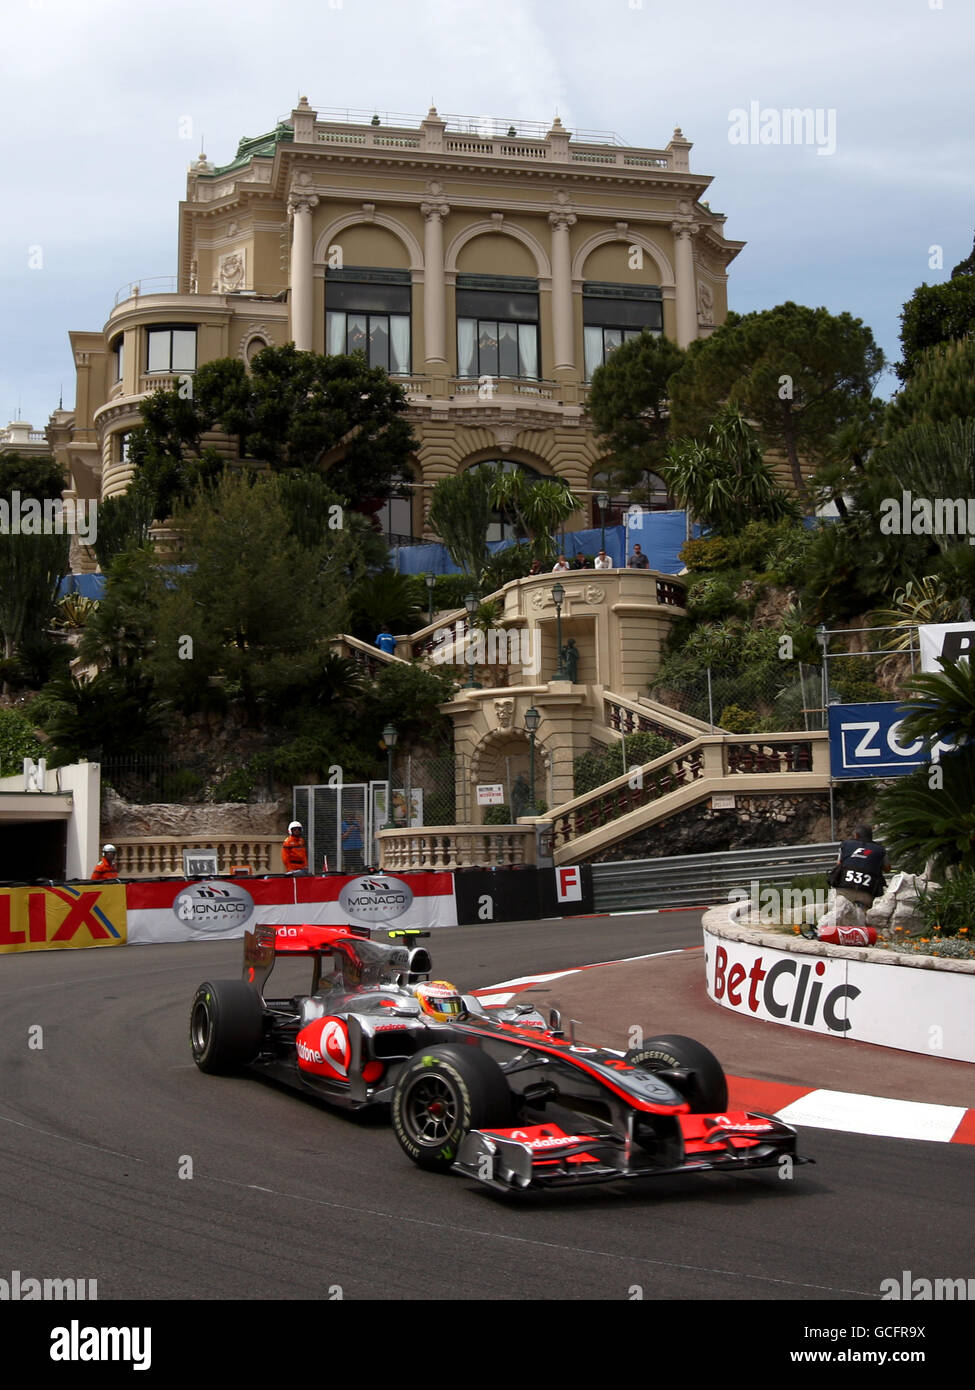 Formula uno Motor Racing - Gran Premio di Monaco - Practice e Qualifiche - circuito di Monaco. Lewis Hamilton (GBR), McLaren. Foto Stock